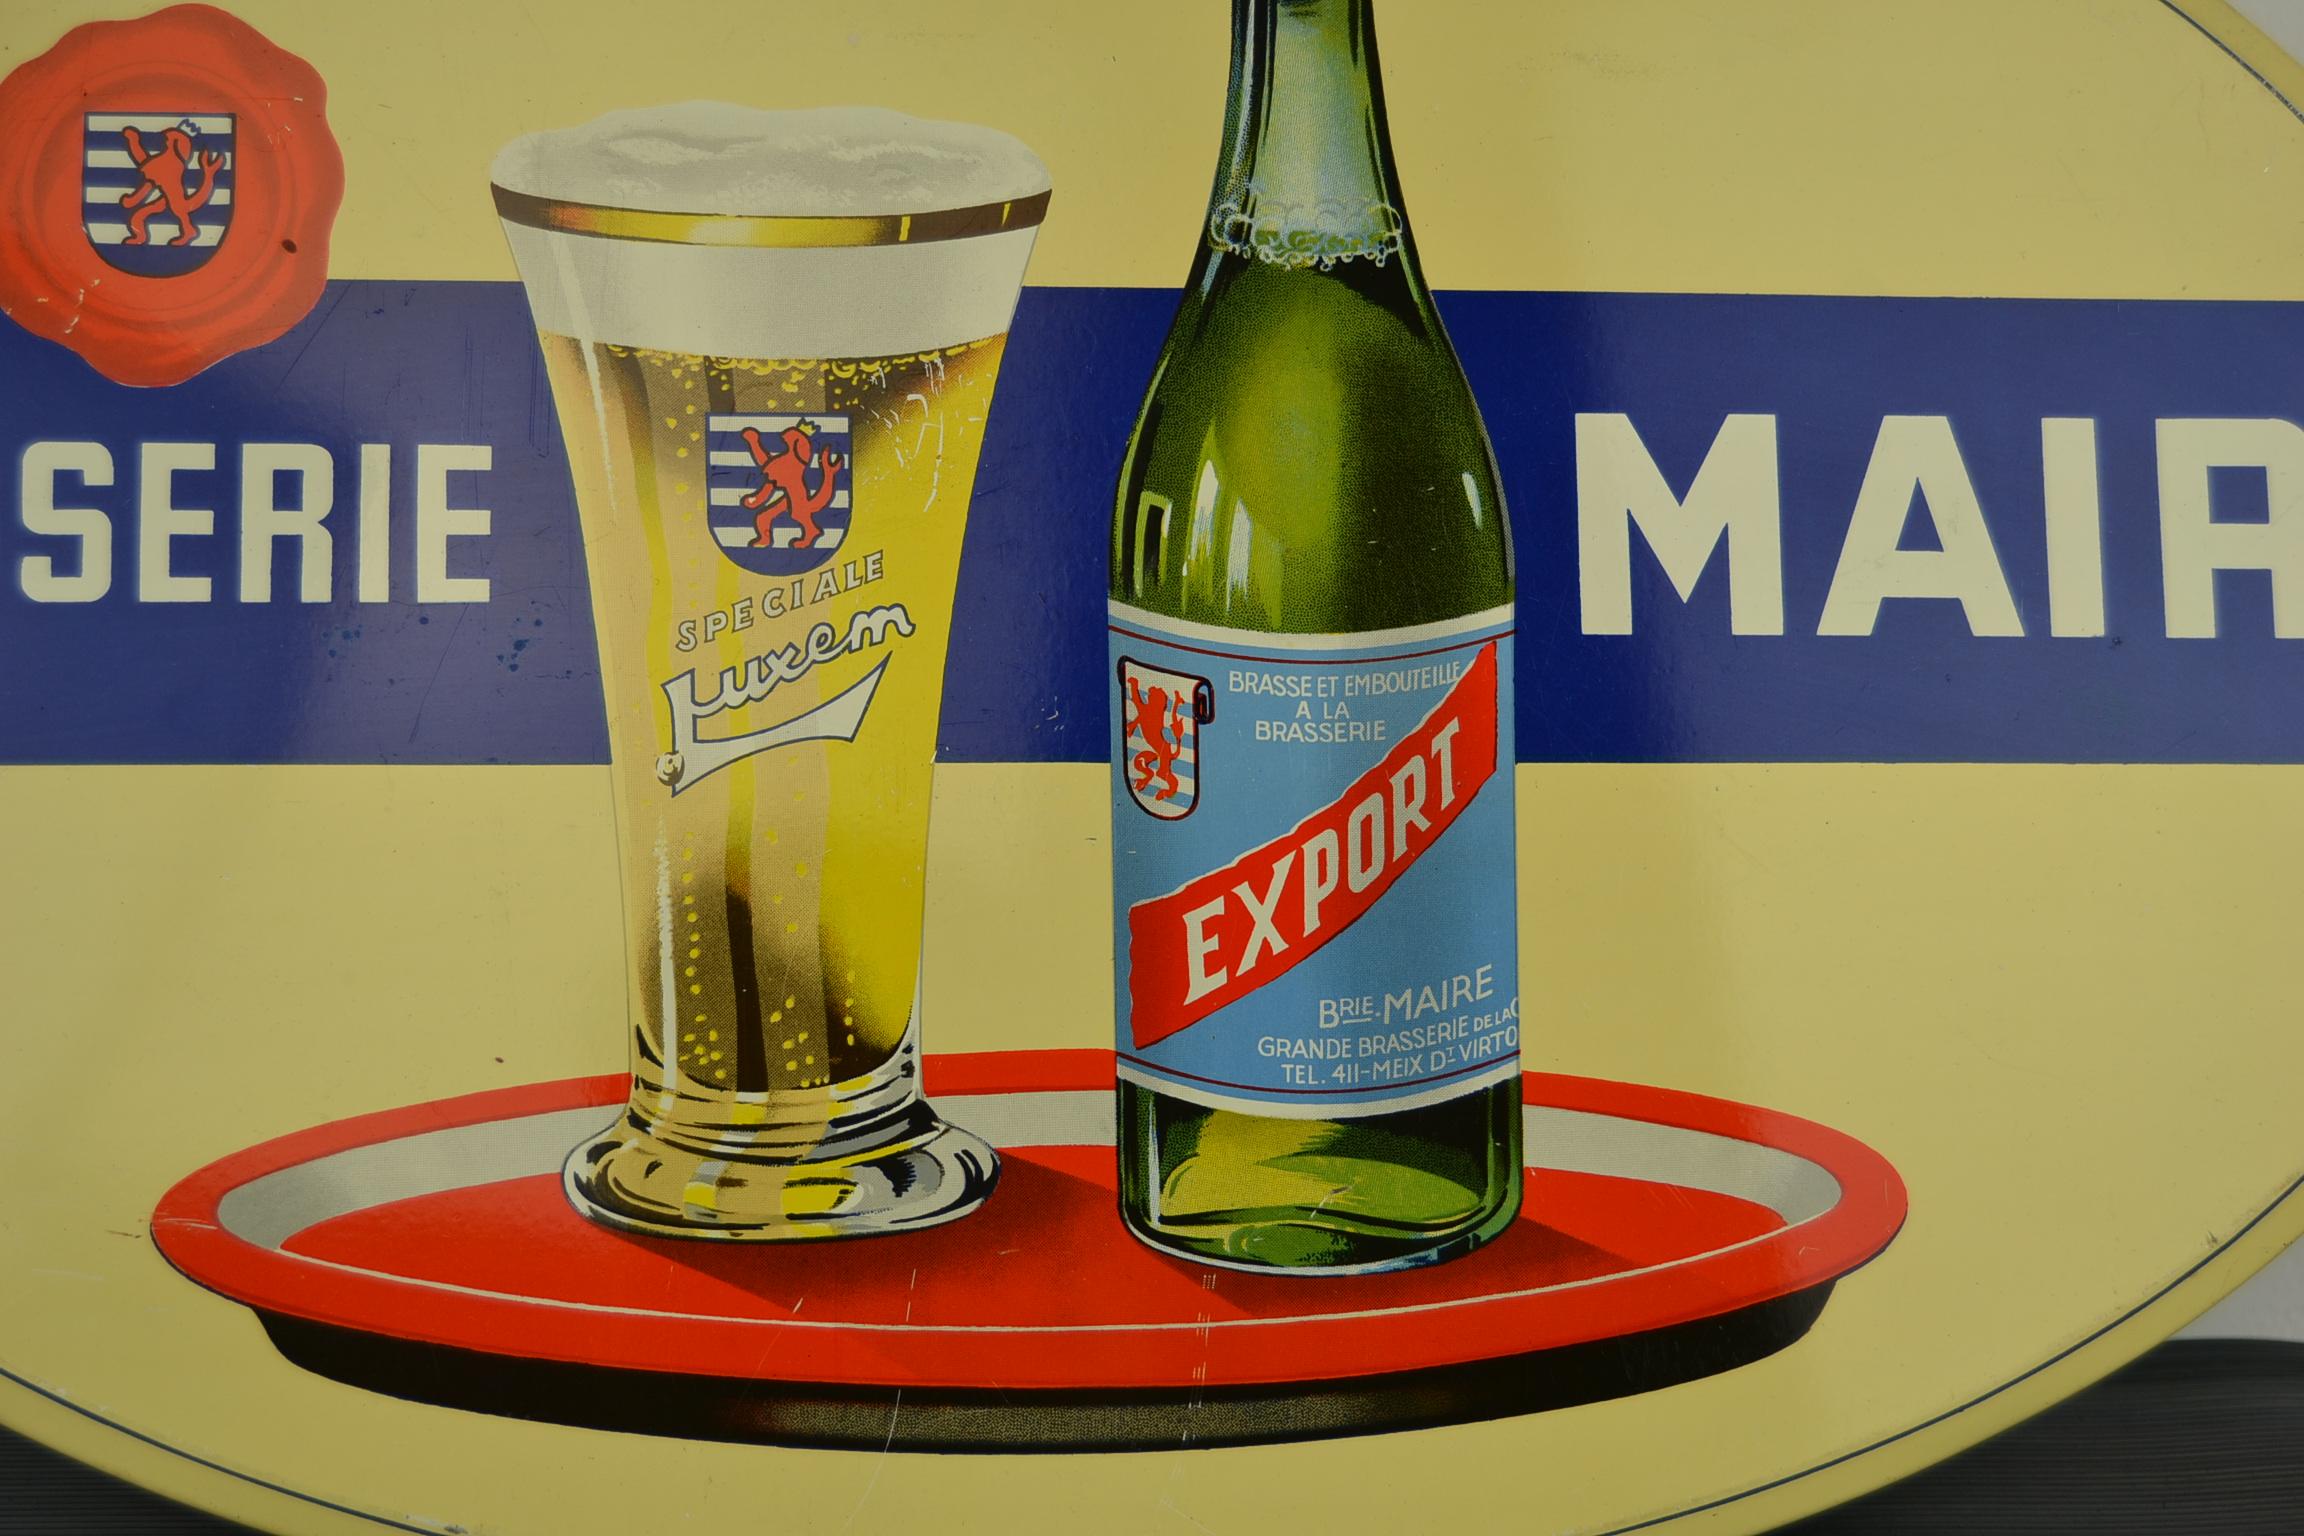 Panneau publicitaire en fer-blanc des années 1950 pour une bière belge : 
Brasserie Maire - Speciale Luxem - Bière d'exportation.
Un panneau publicitaire avec un grand design pour la bière blonde :  une bouteille de bière et un verre à bière sur un